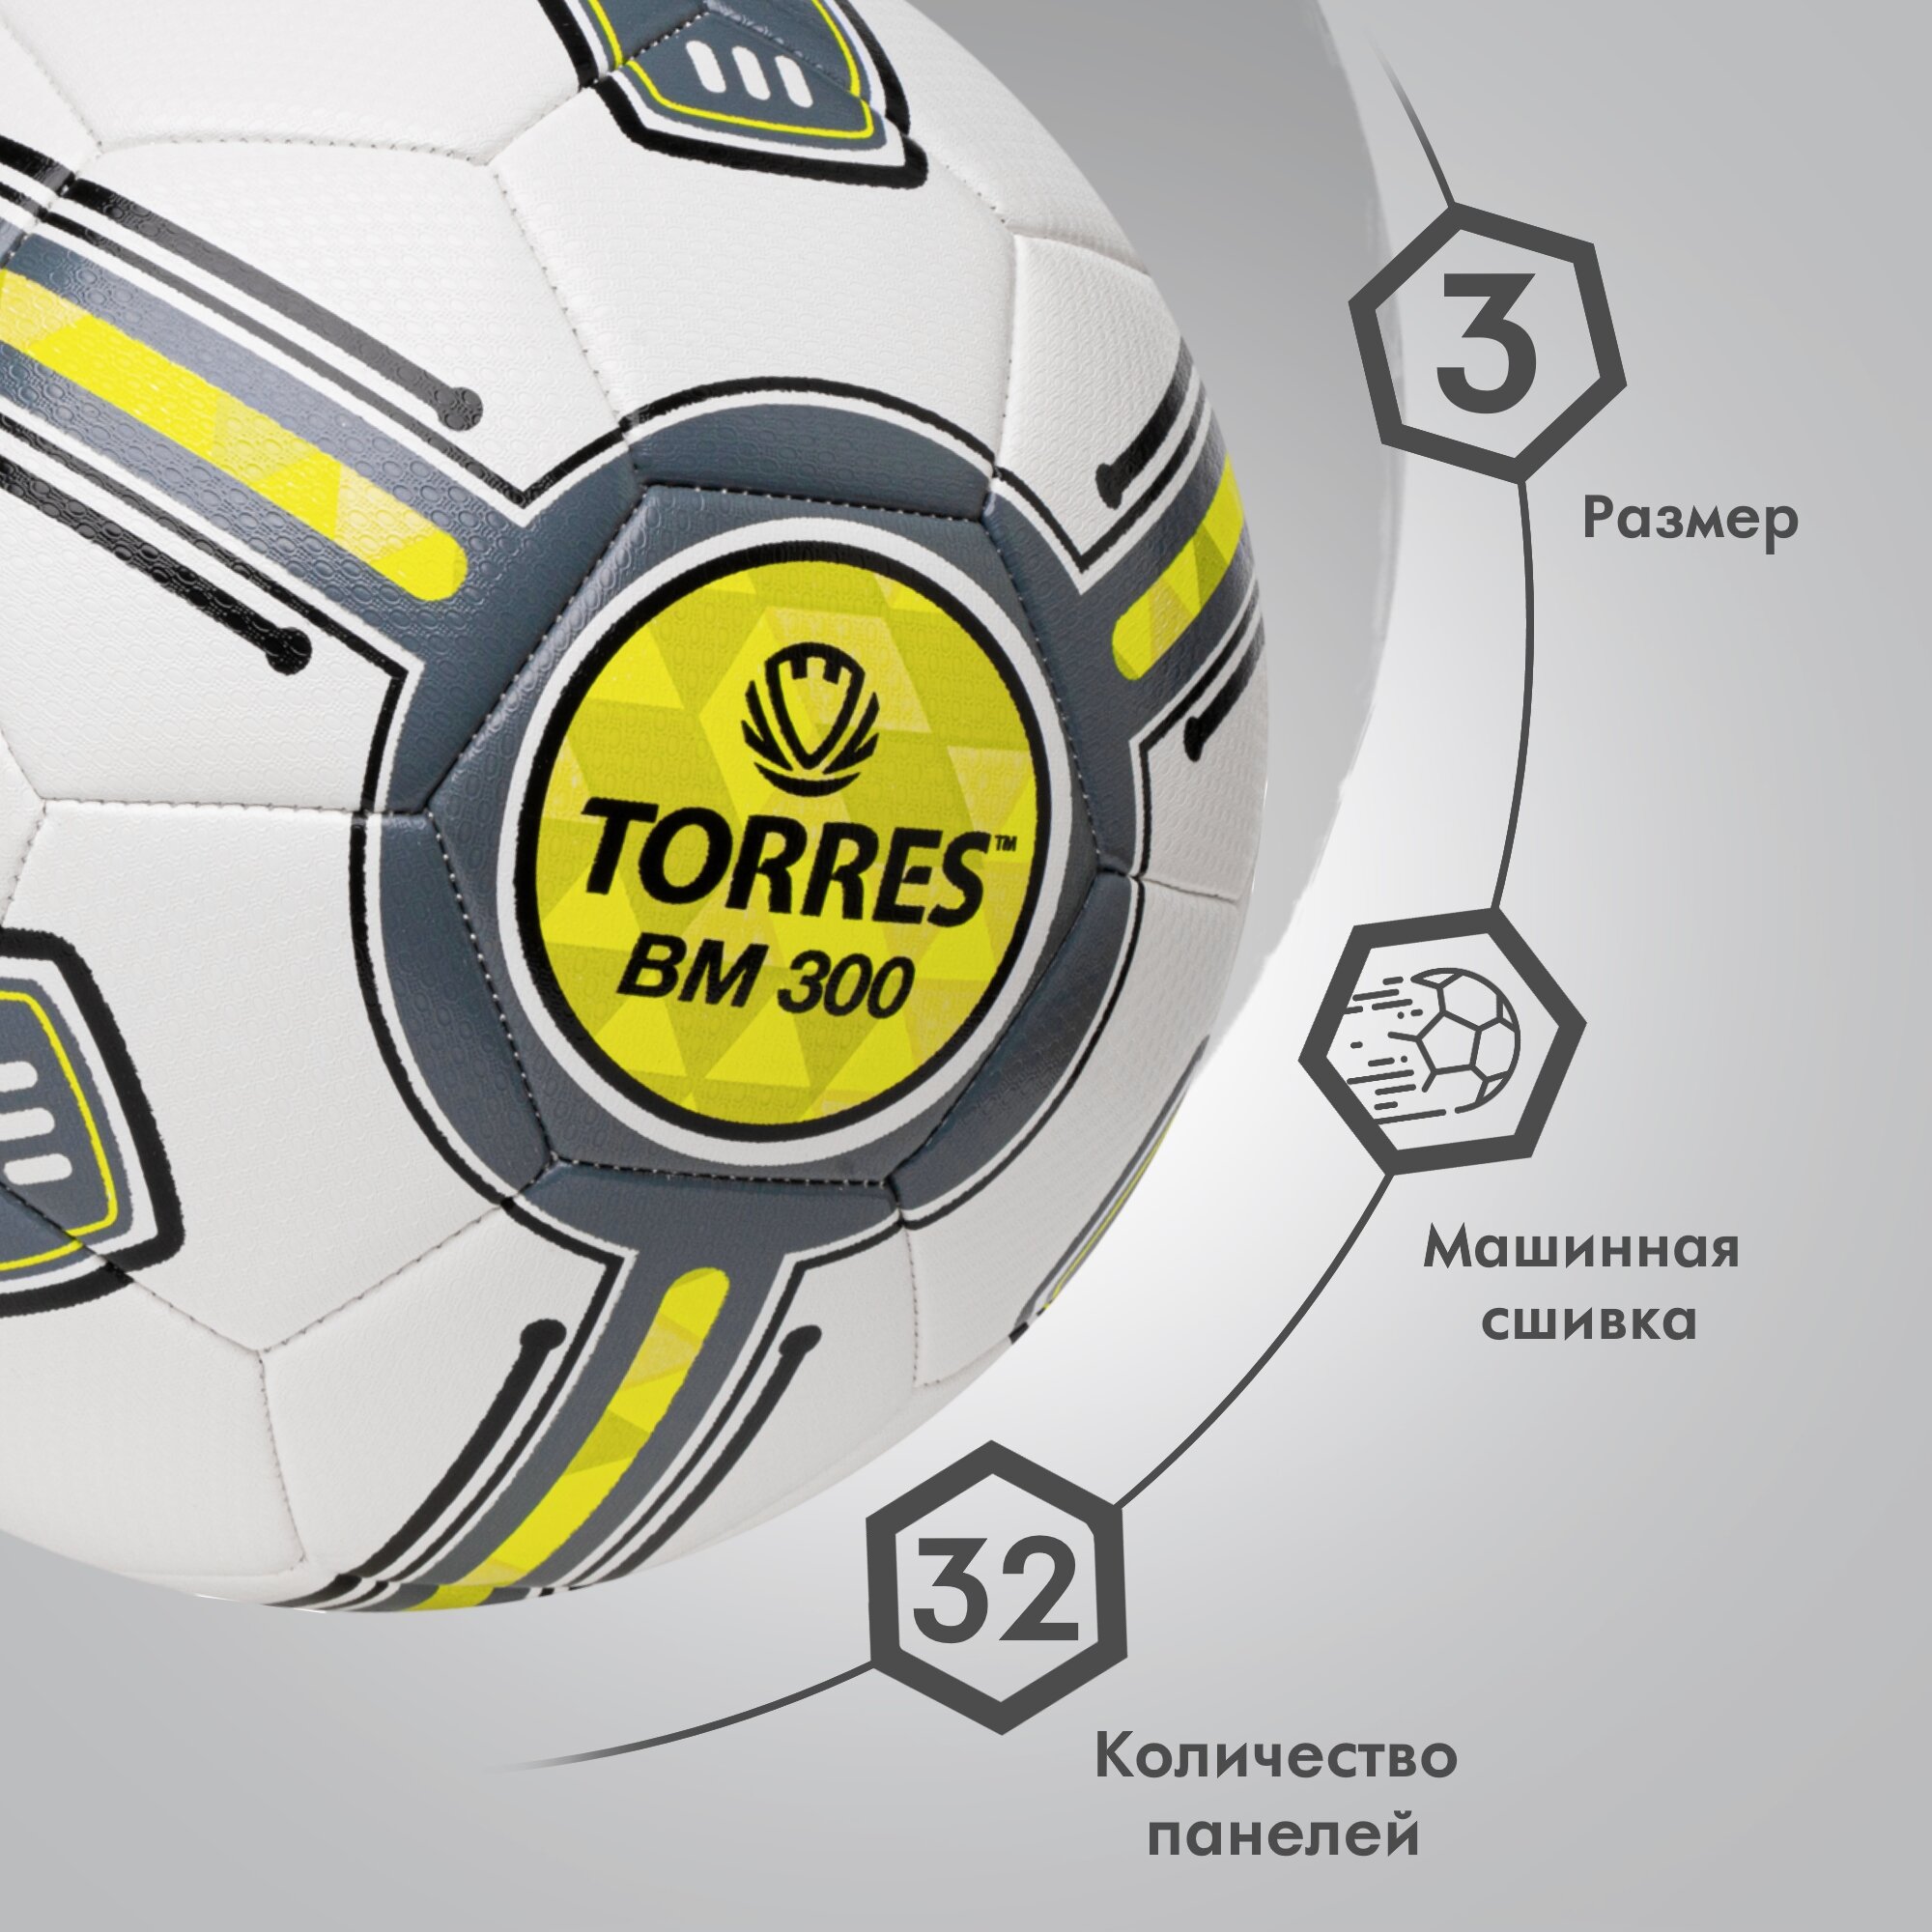 Мяч футбольный TORRES BM300 F323653, размер 3